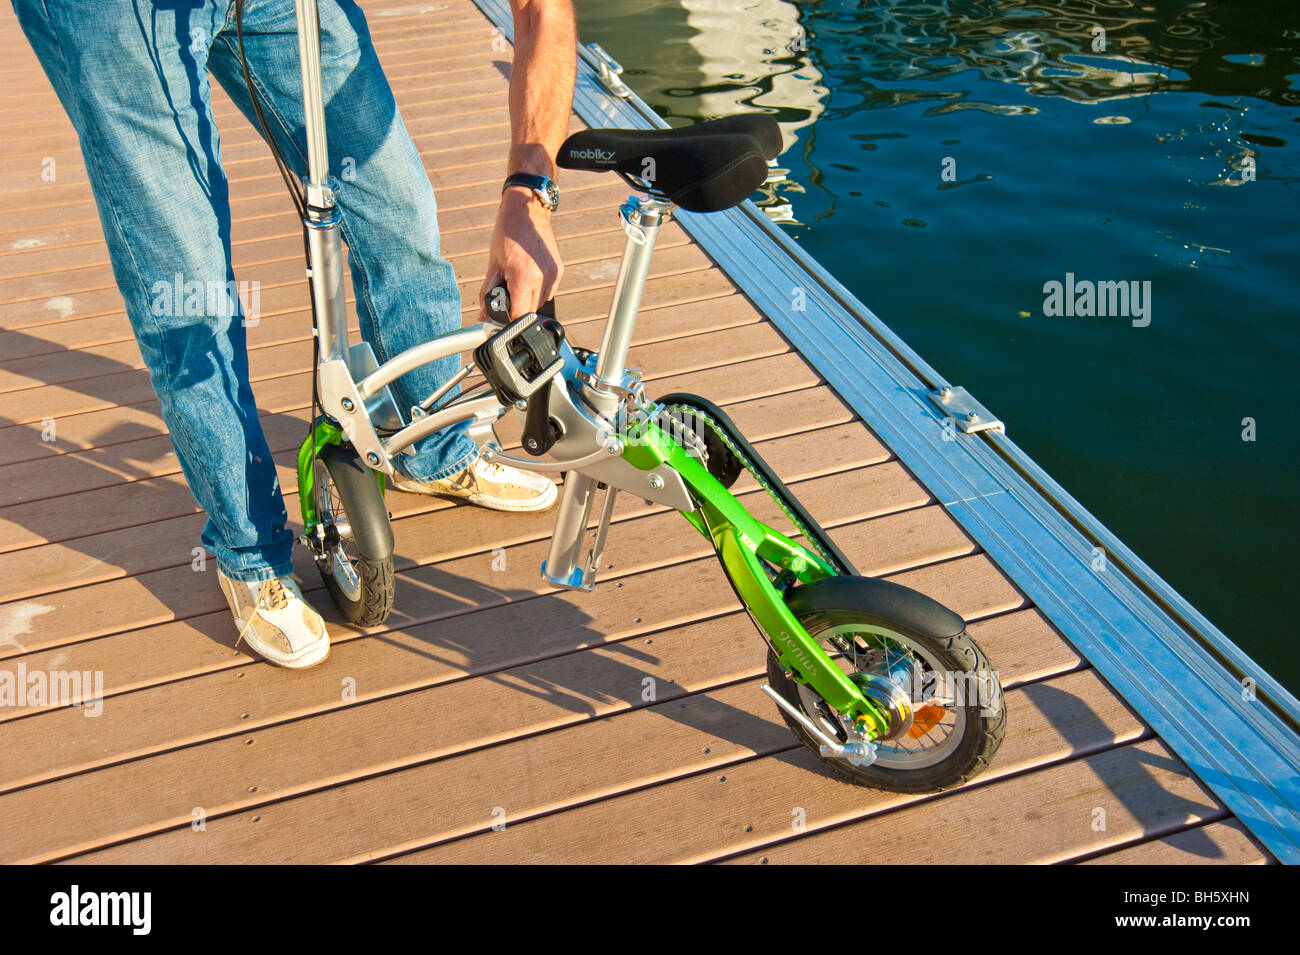 L'homme dépliant une Mobiky vélo sur un débarcadère avec yachts Photo Stock  - Alamy